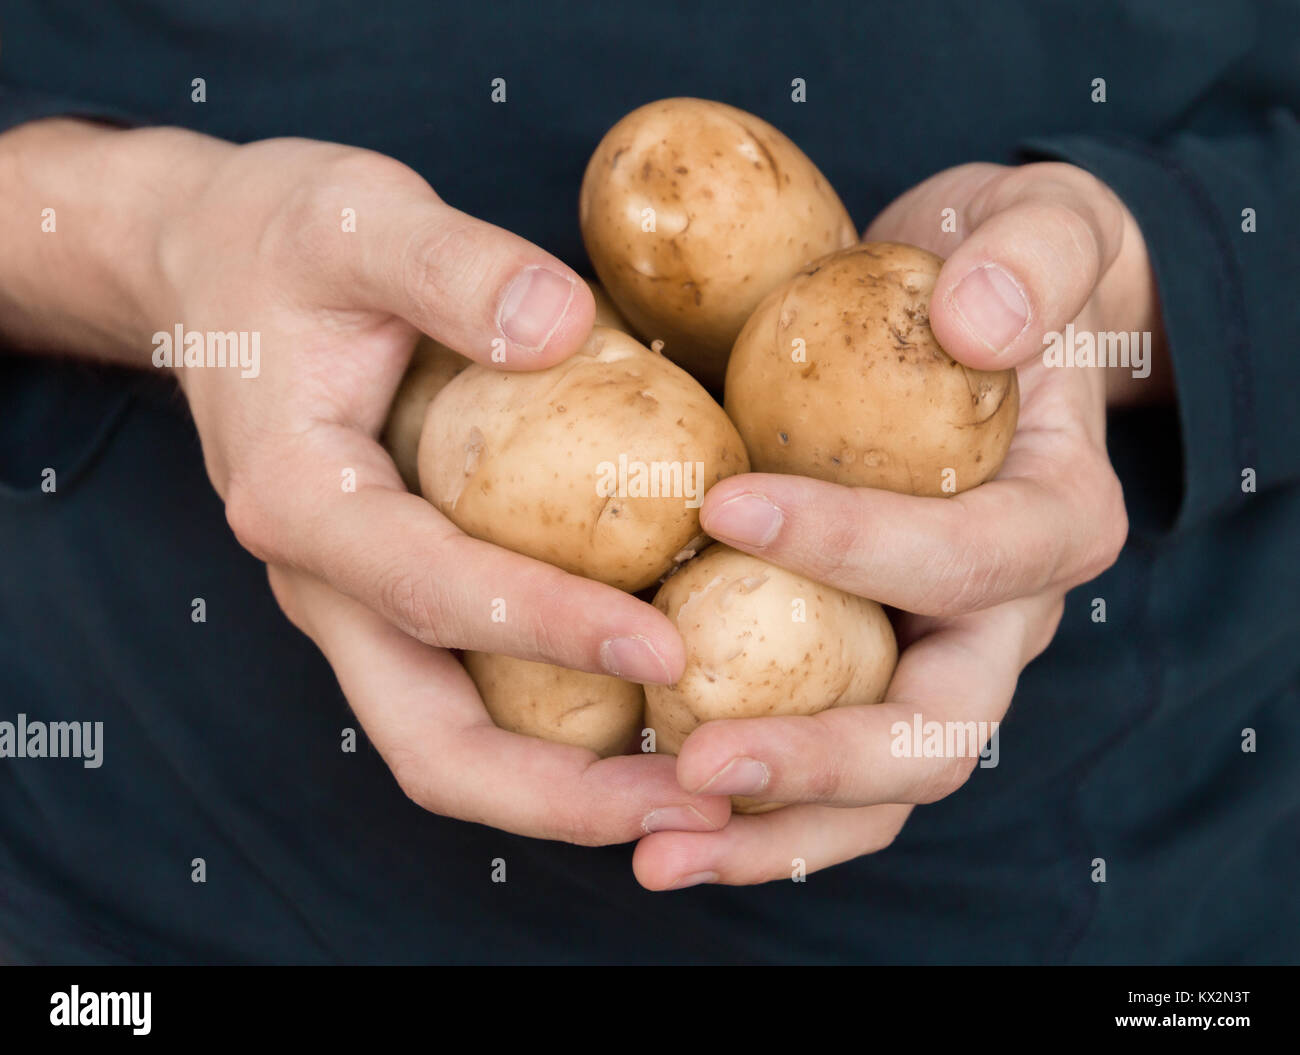 closeup of man hands holding potatos Stock Photo